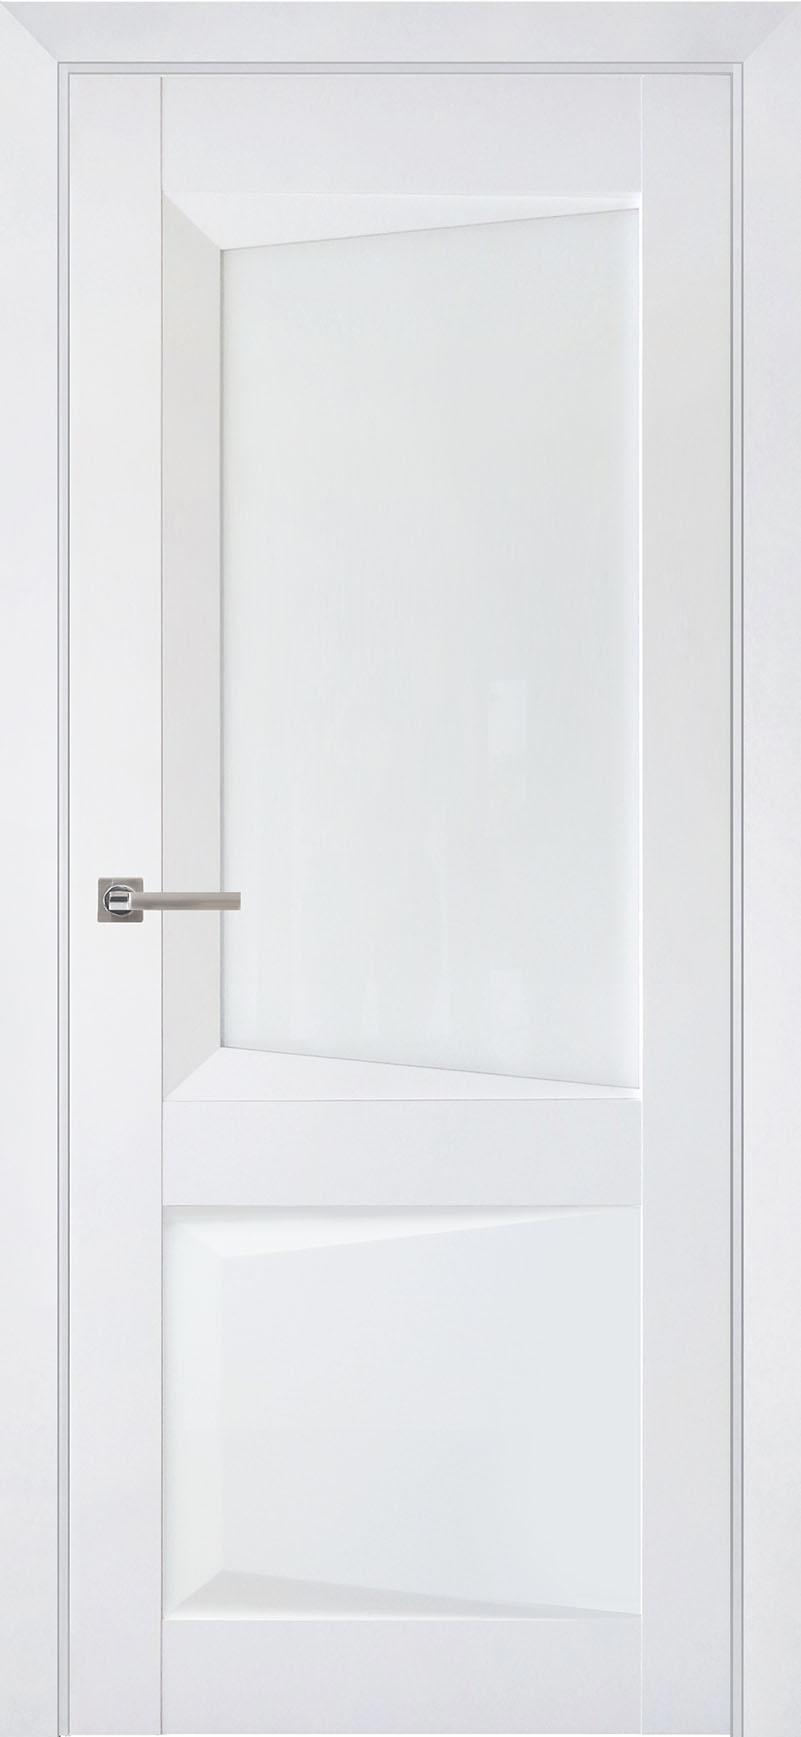 90903223 Межкомнатная дверь Перфекто 108 остеклённая без замка и петель в комплекте 200x90см белый STLM-0420049 UBERTURE